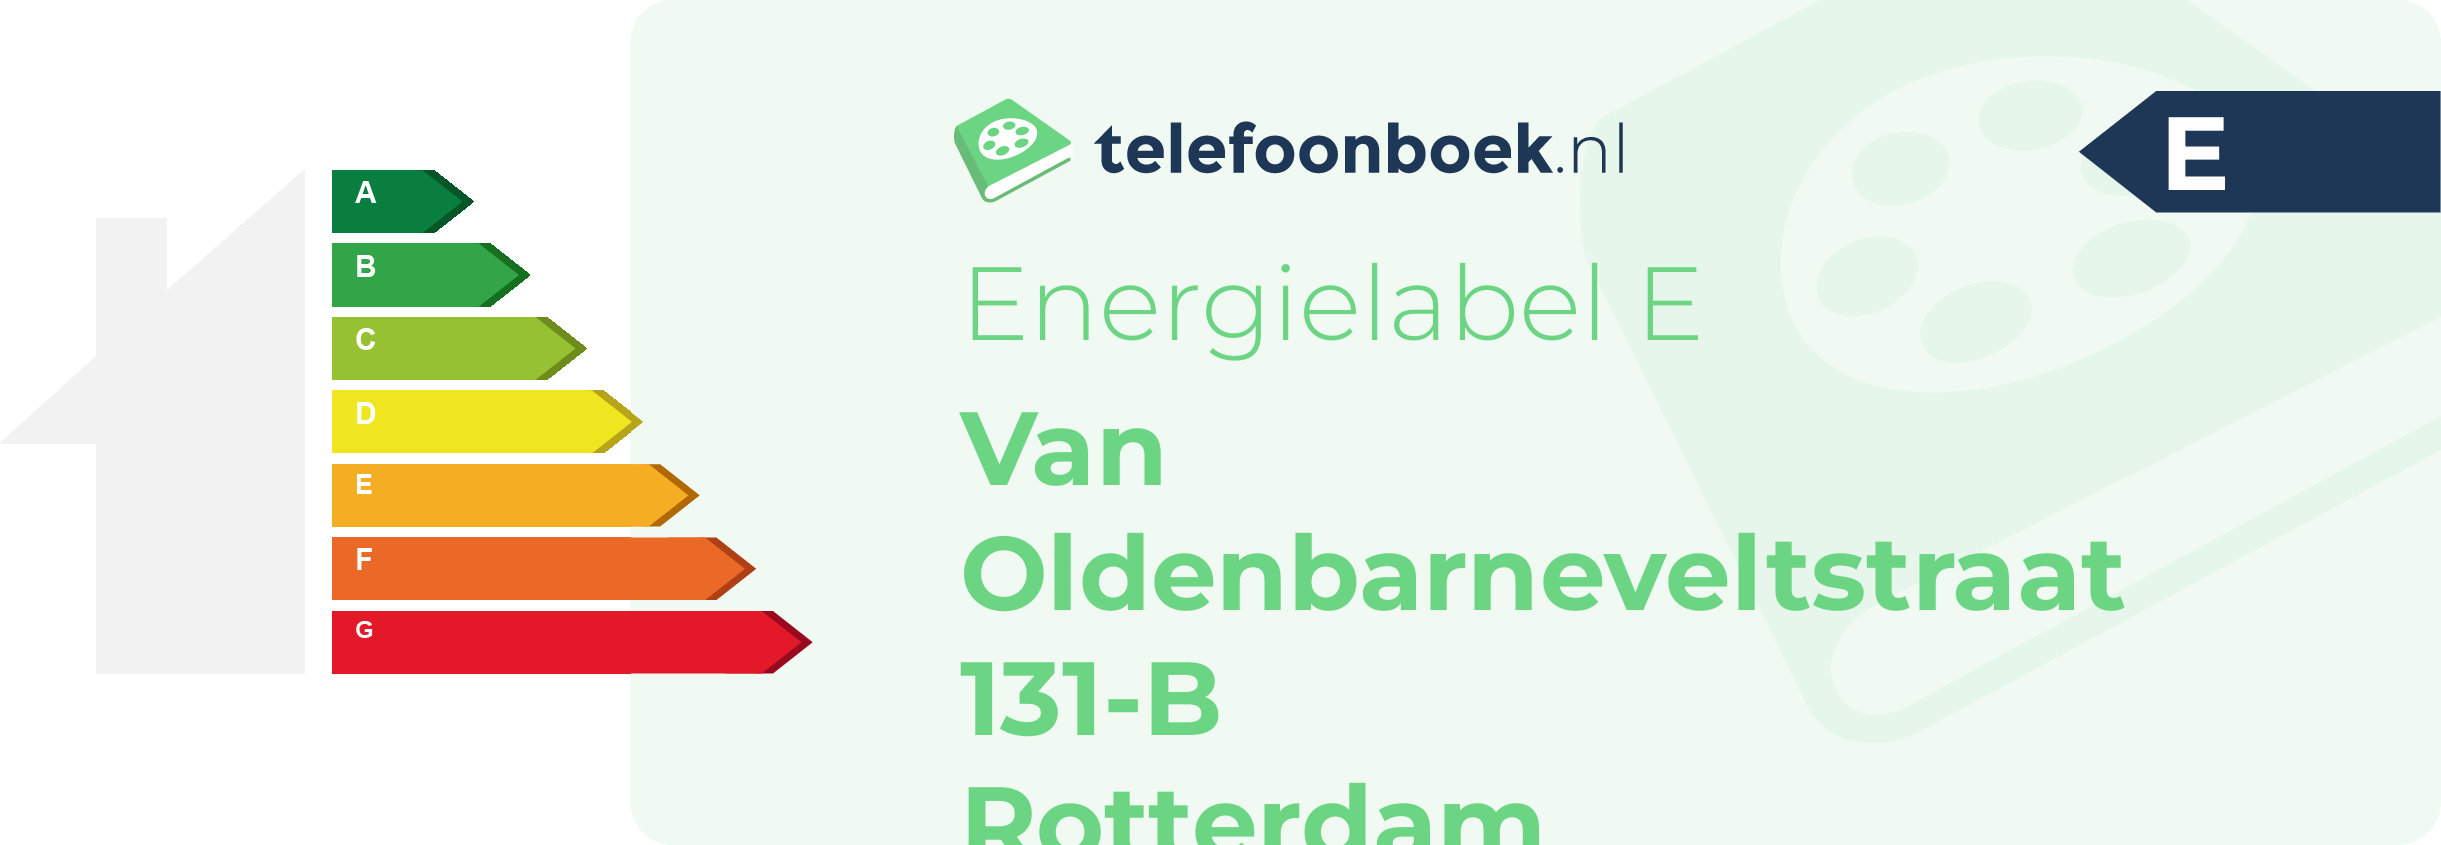 Energielabel Van Oldenbarneveltstraat 131-B Rotterdam